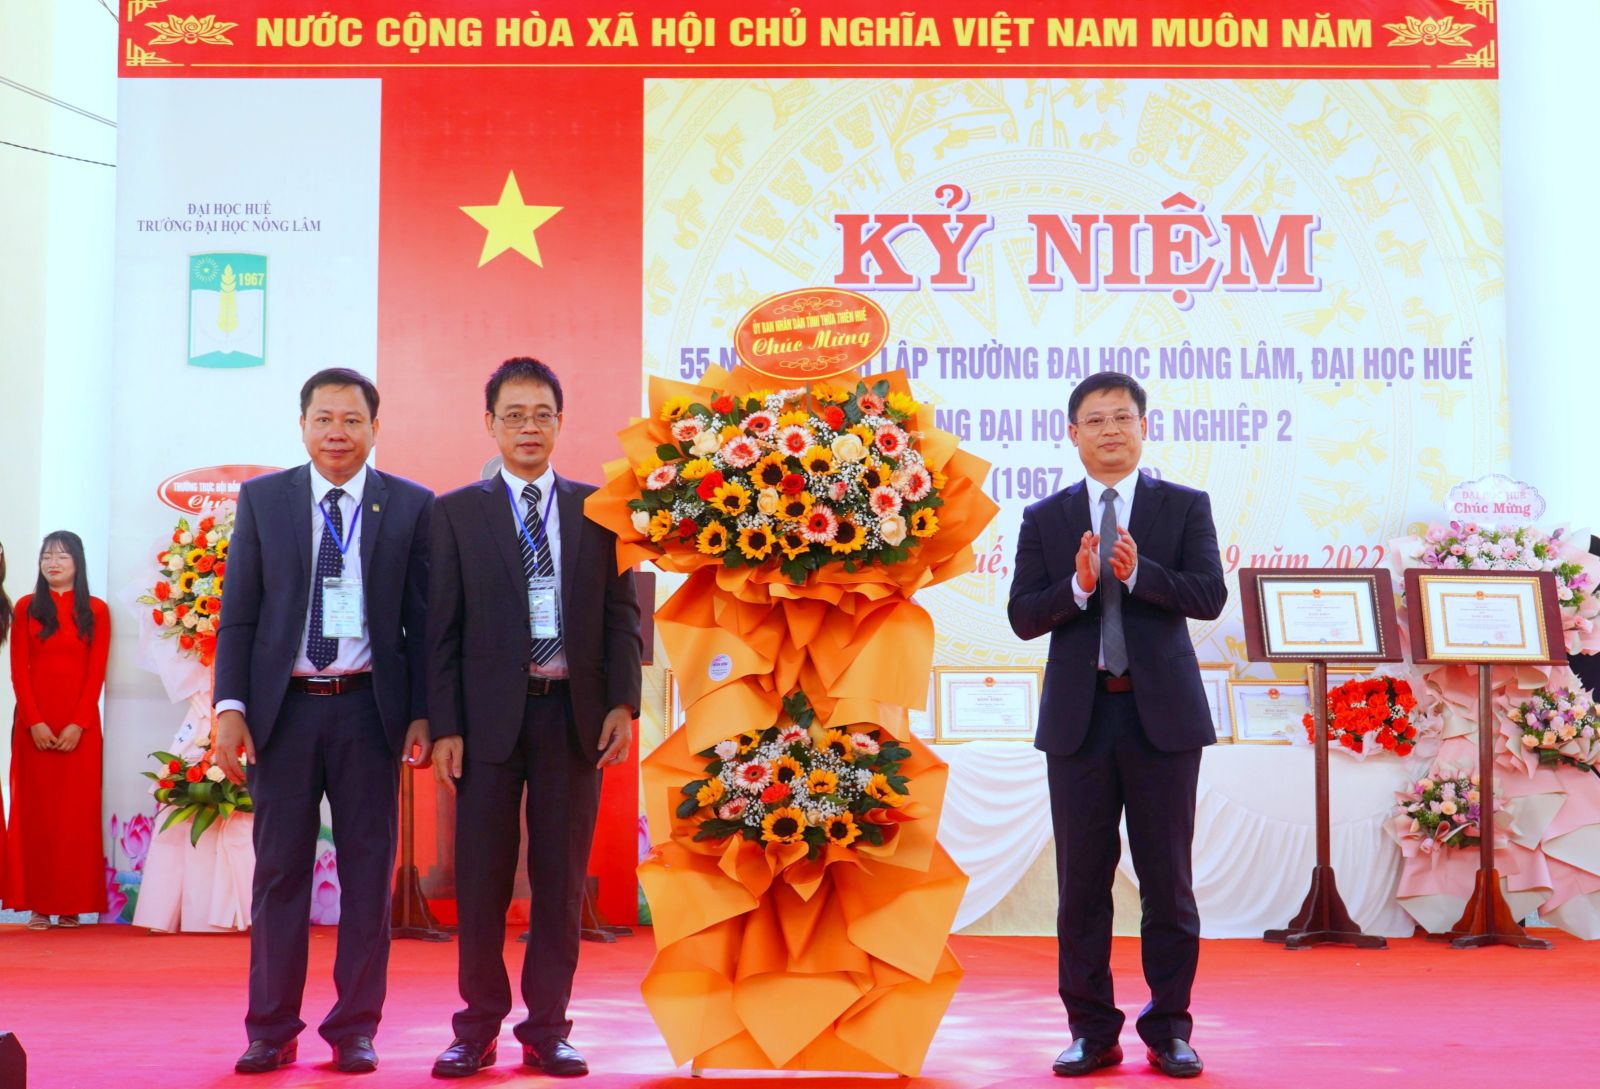 Phó Chủ tịch UBND tỉnh - ông Nguyễn Thanh Bình tặng hoa chúc mừng nhà trường